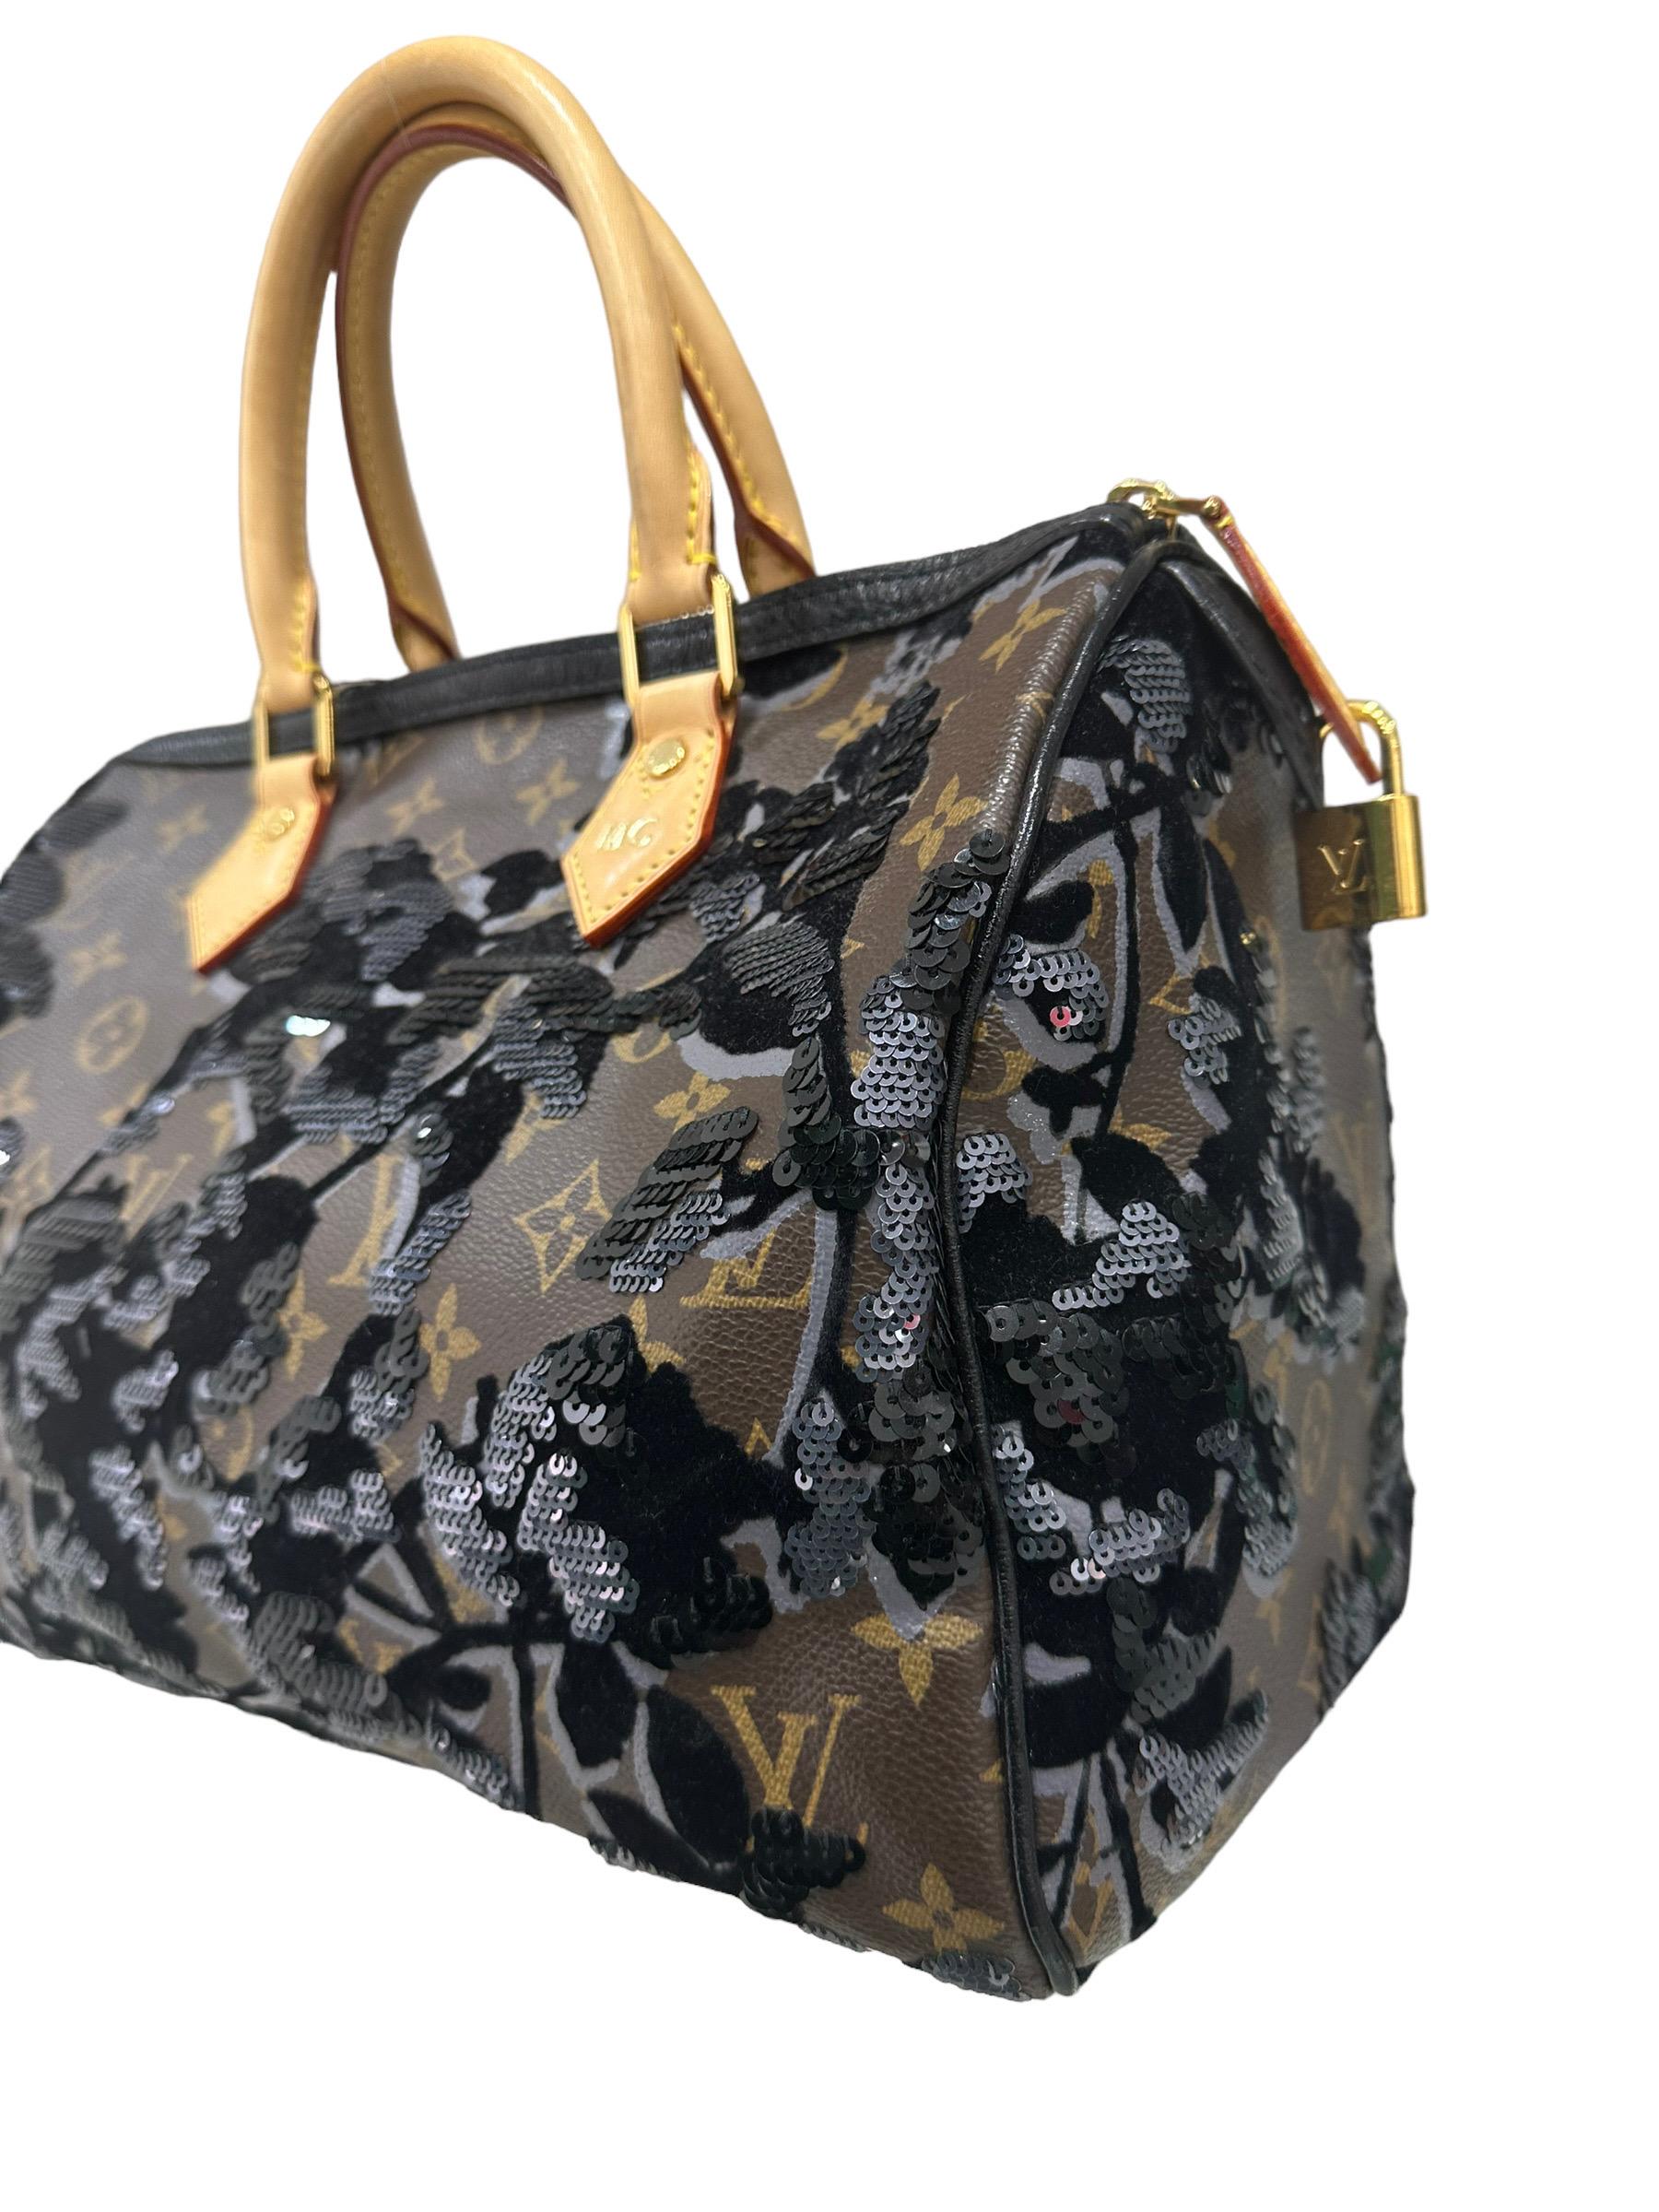 2011 Louis Vuitton Speedy 30 Fleur De Jais Limited Edition Top Handle Bag 3